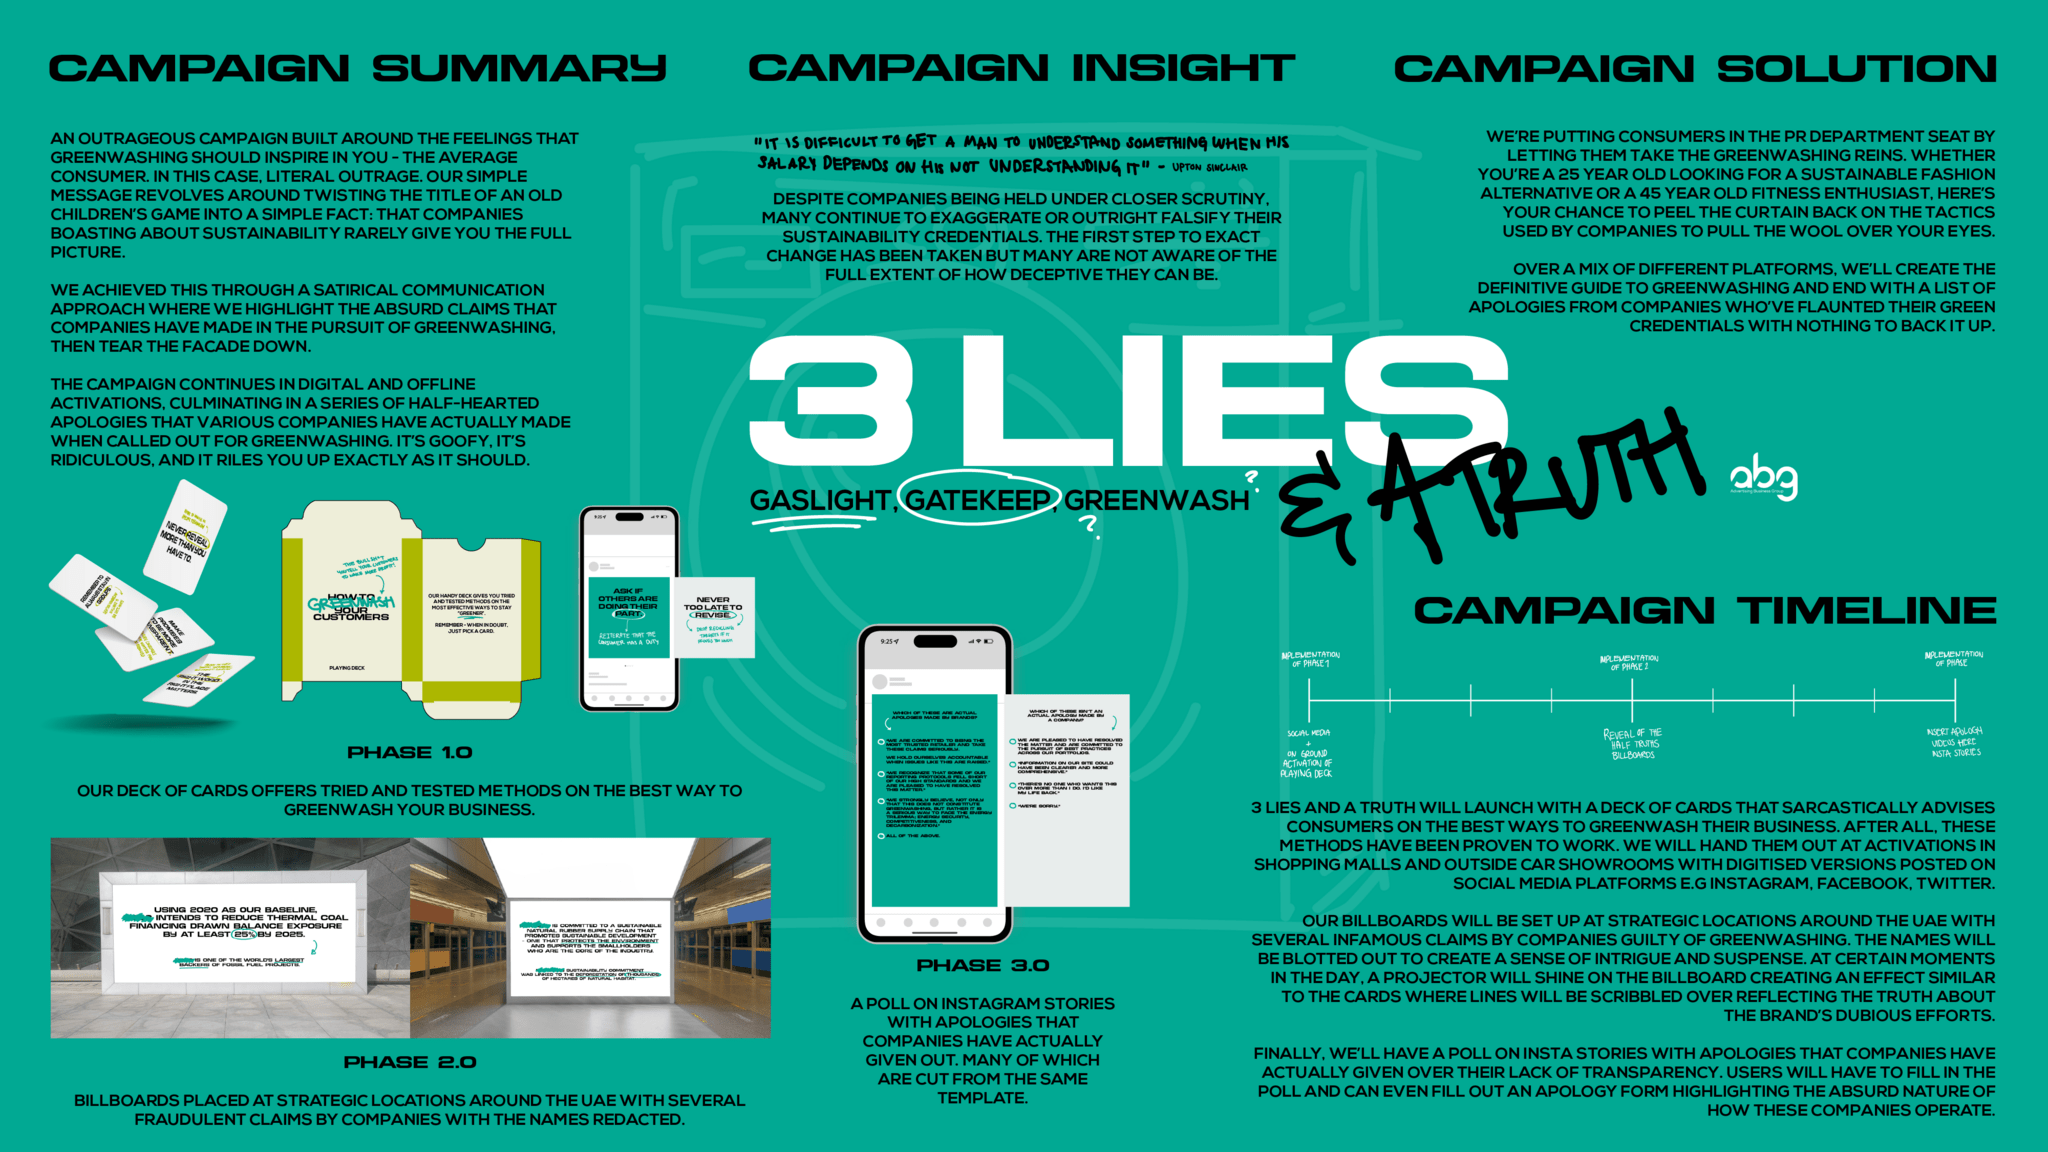 3 LIES & A TRUTH